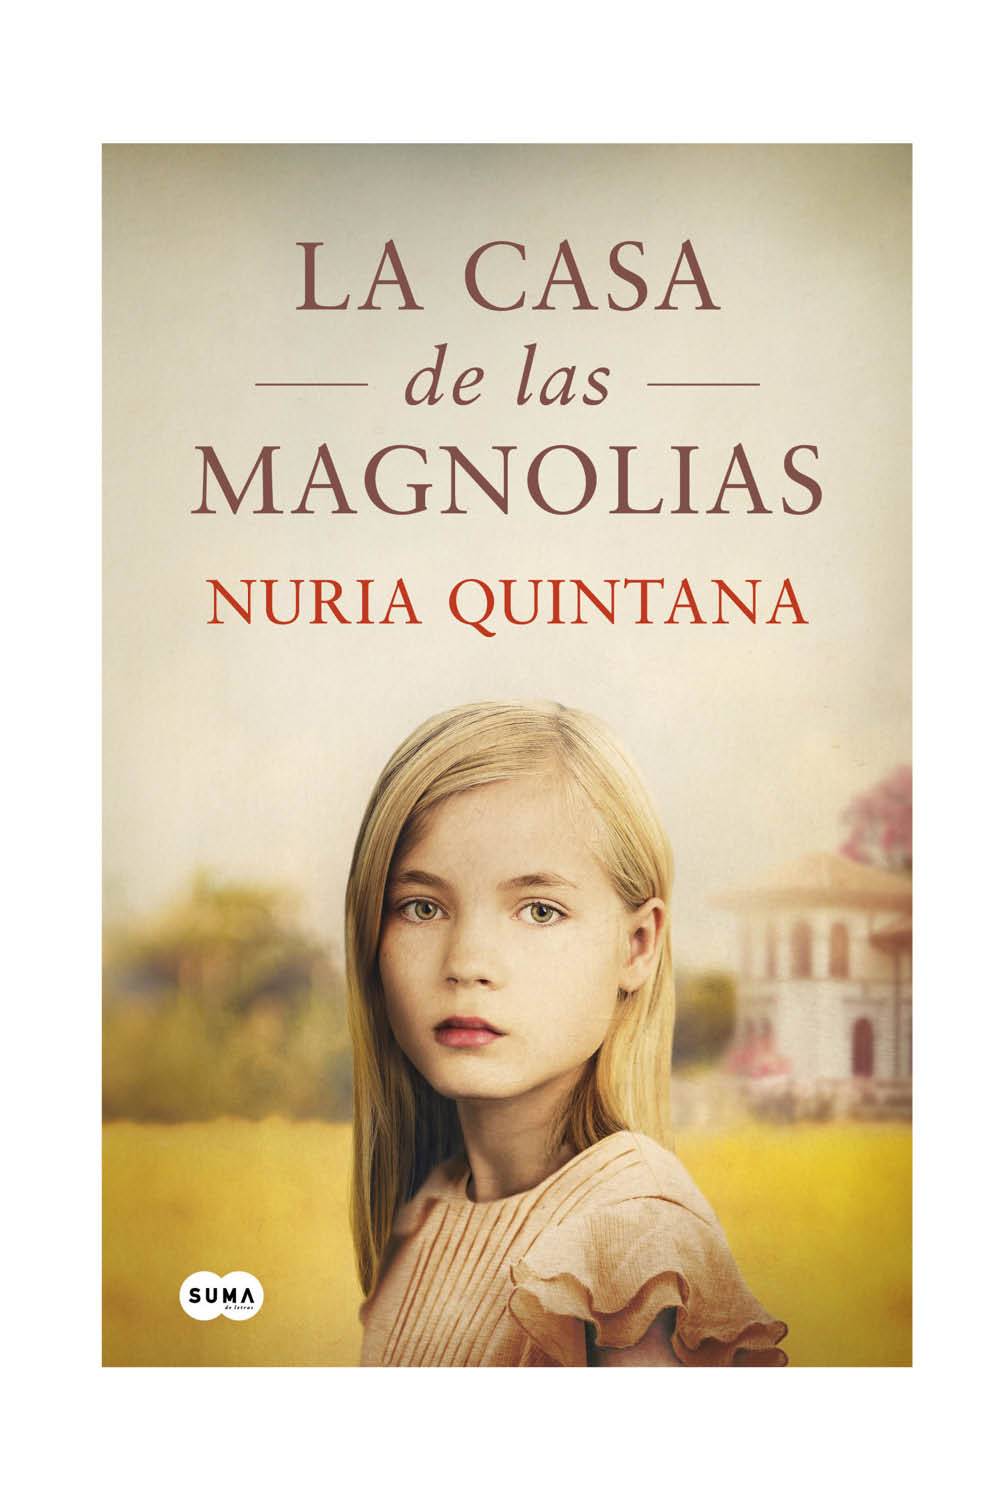 La casa de las magnolias de Nuria Quintana